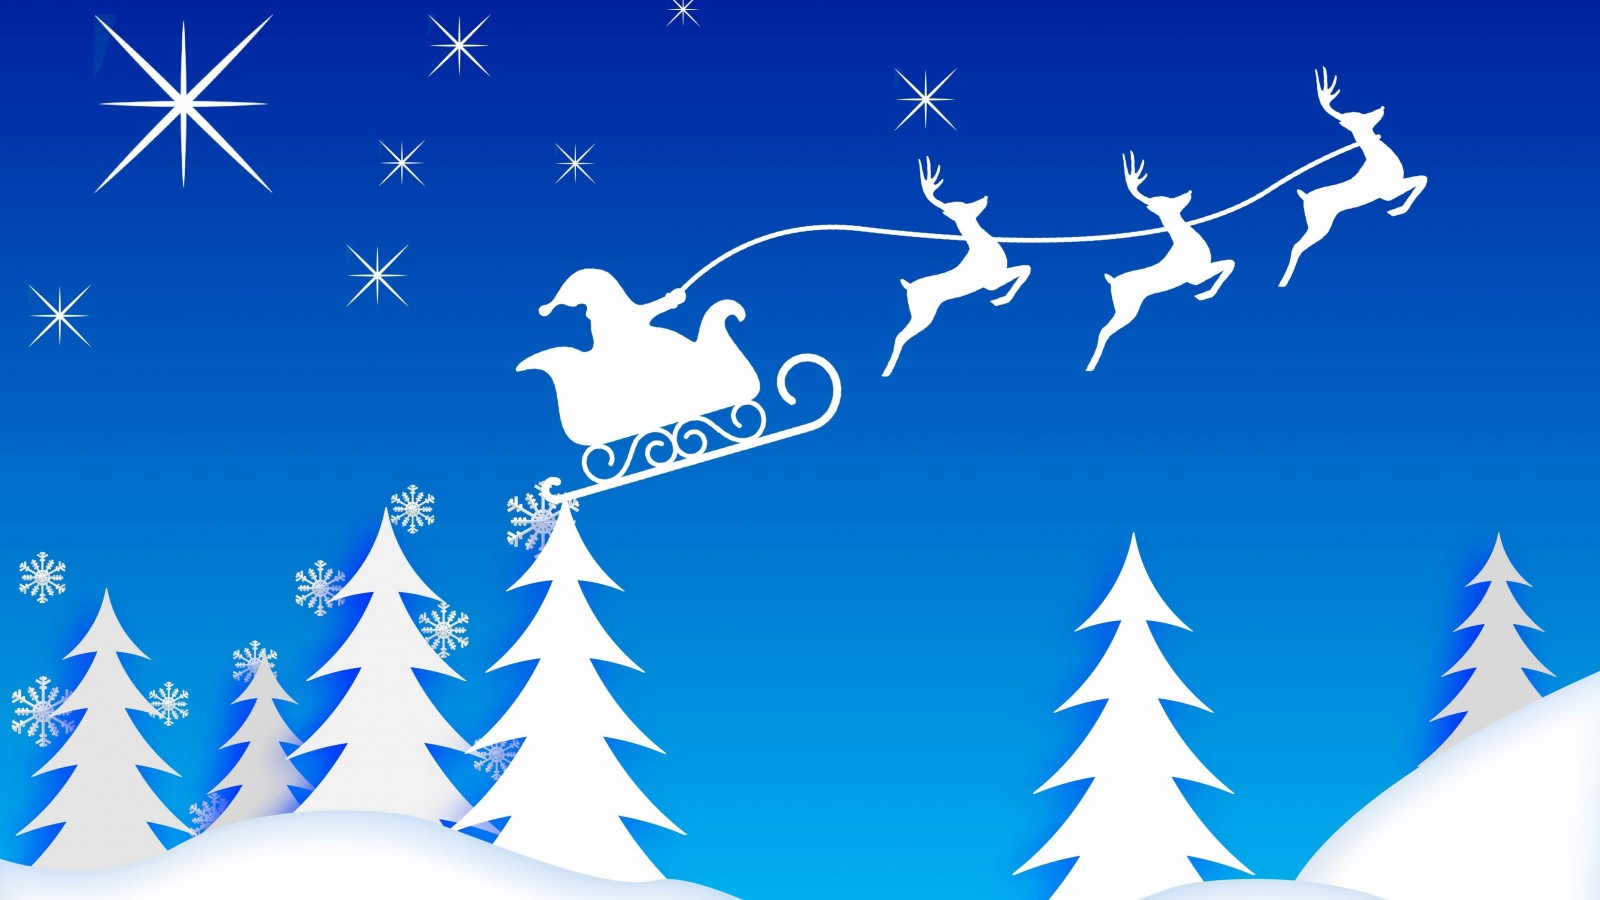 Santa’s Sleigh Illustration Wallpaper for Desktop 1600x900